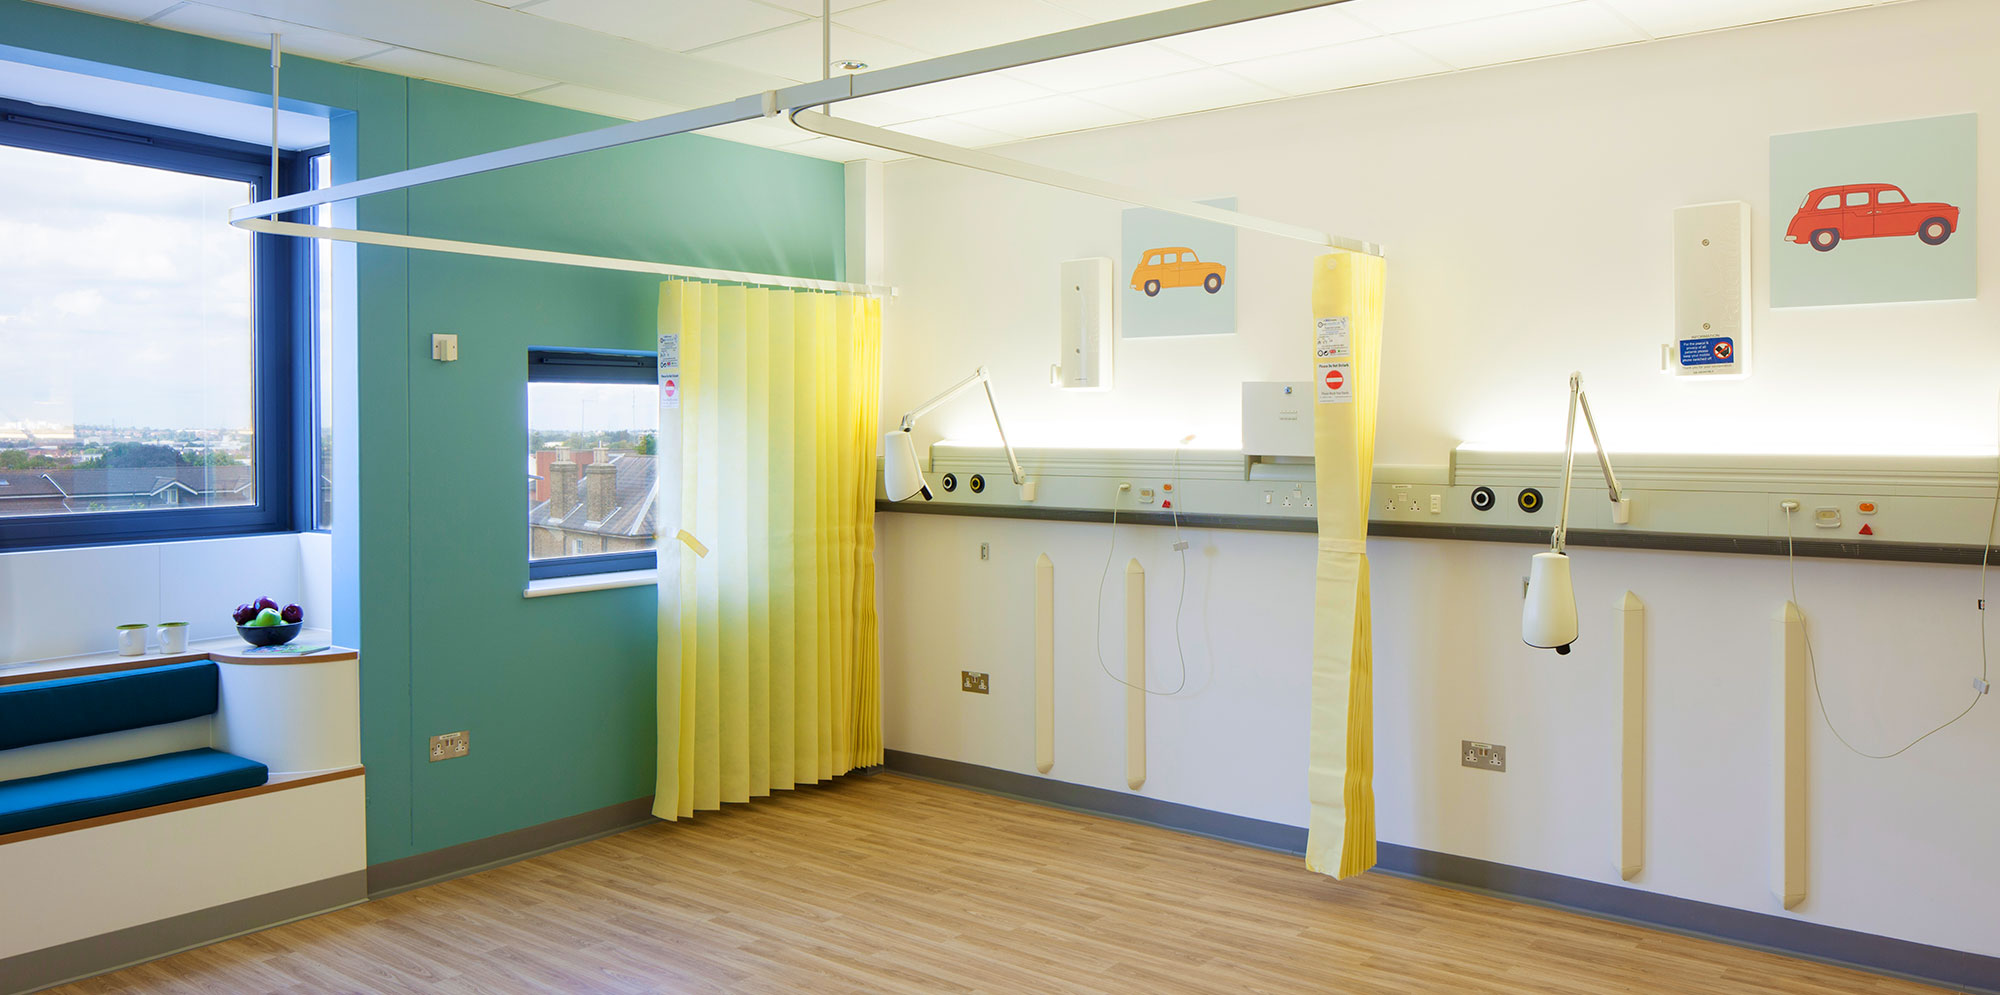 Paediatric room inside Croydon University Hospital